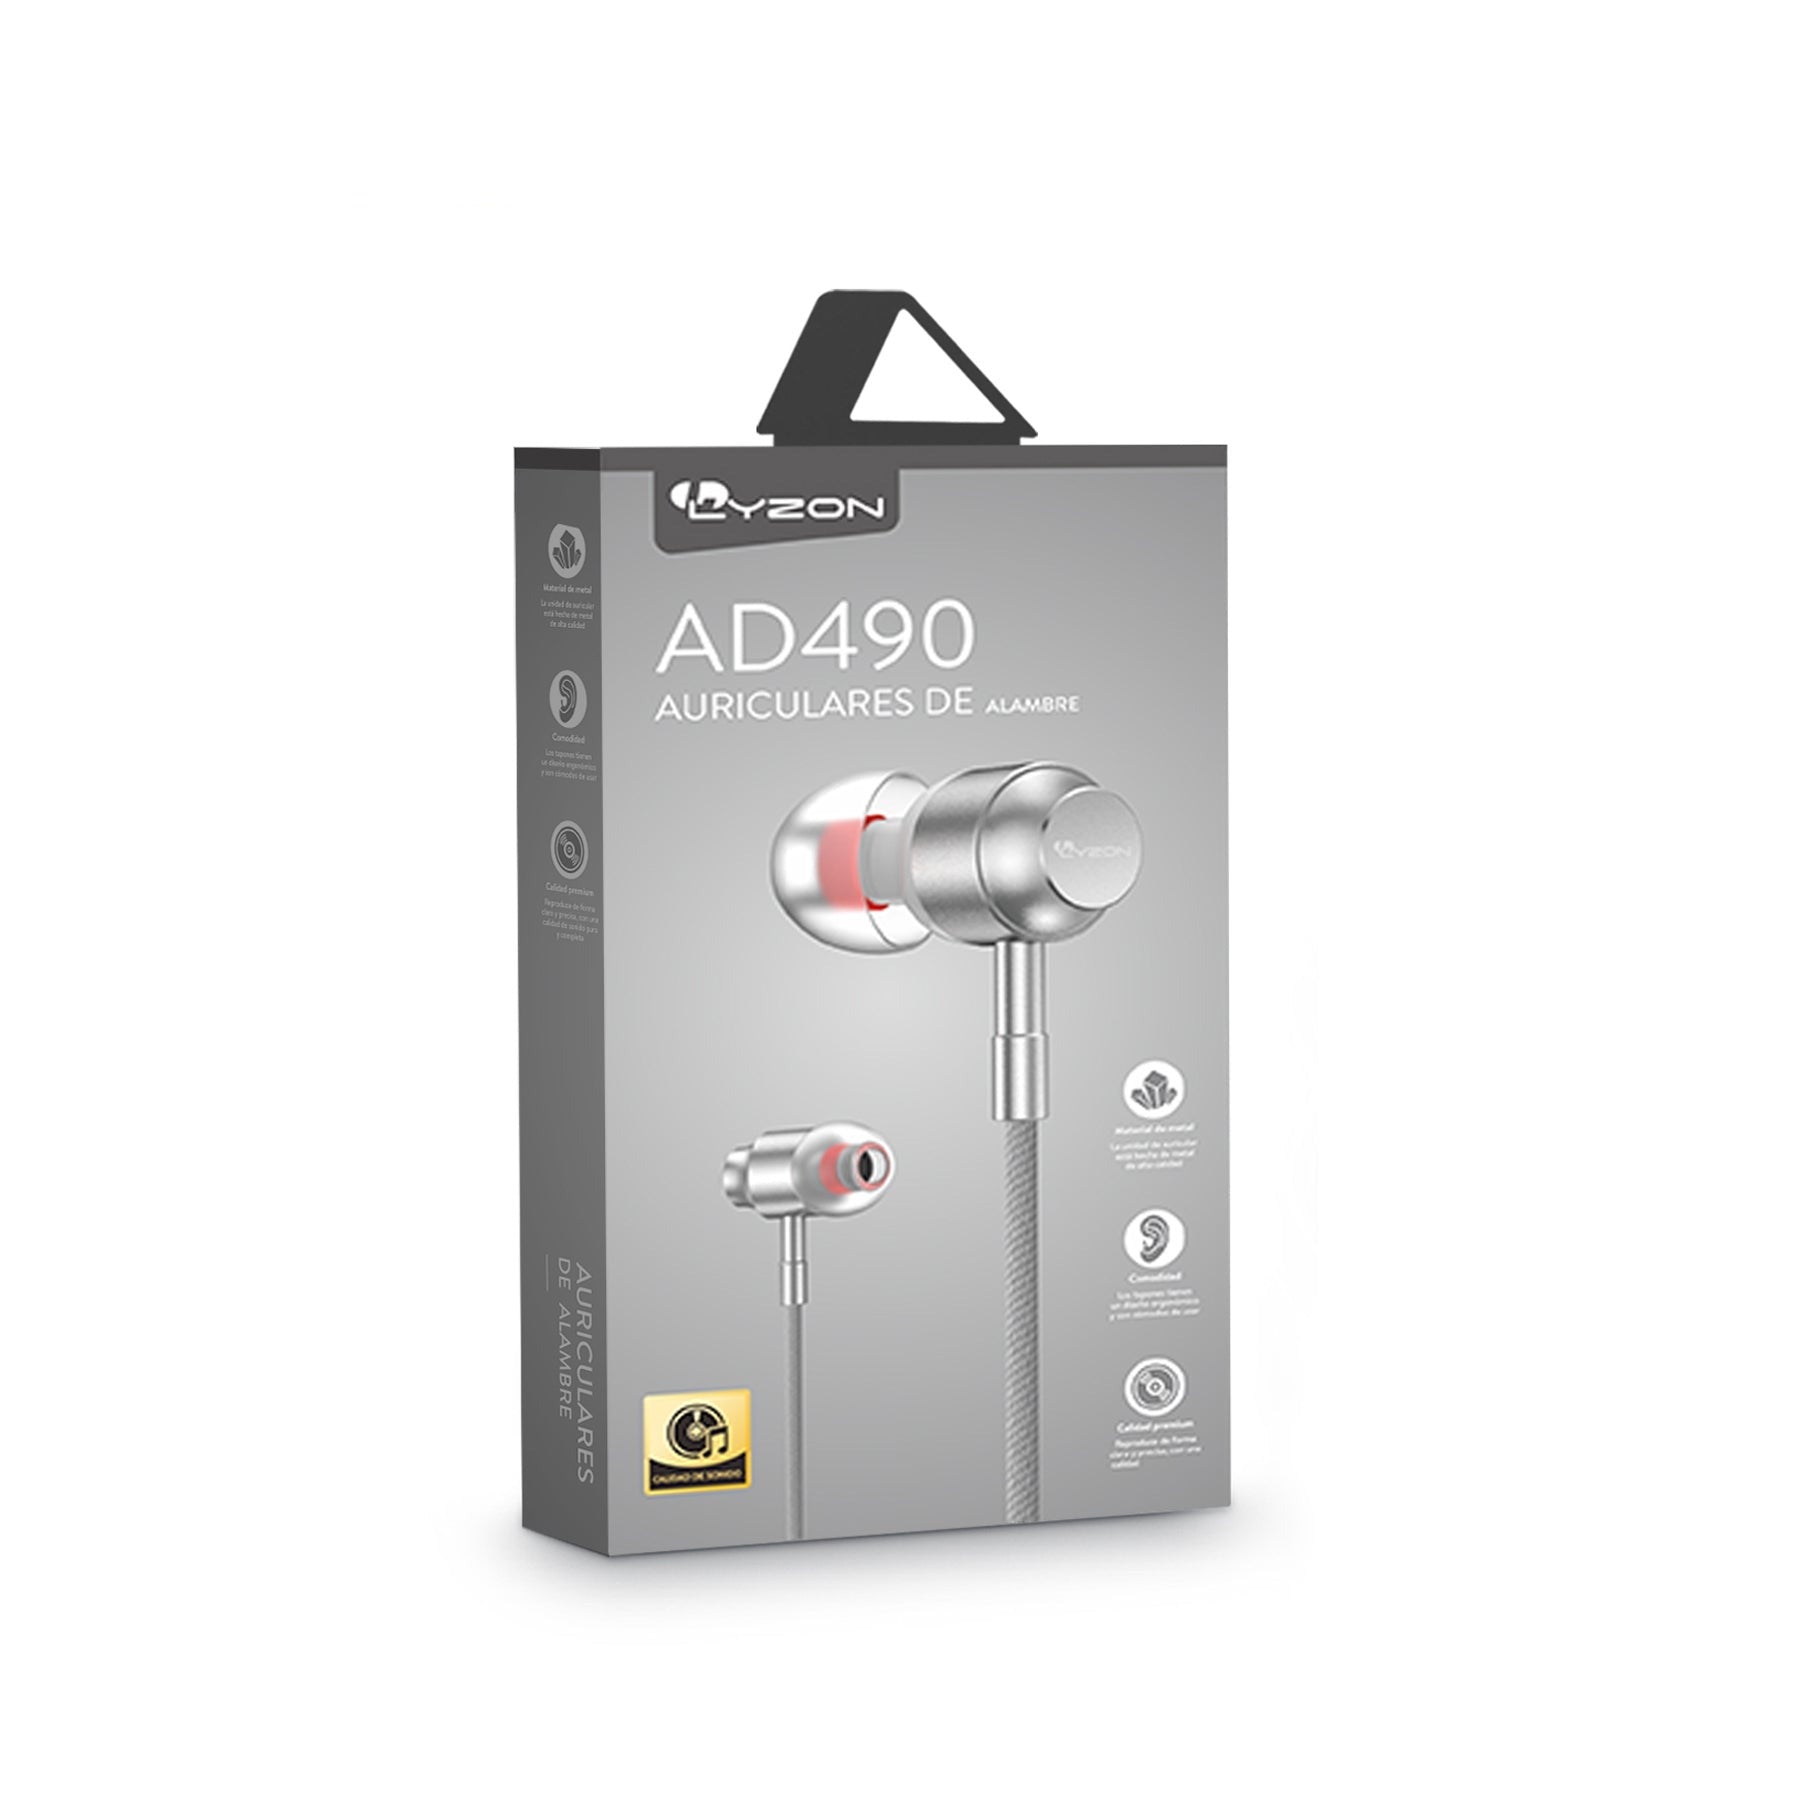 Audífonos con Calidad Estéreo AD490